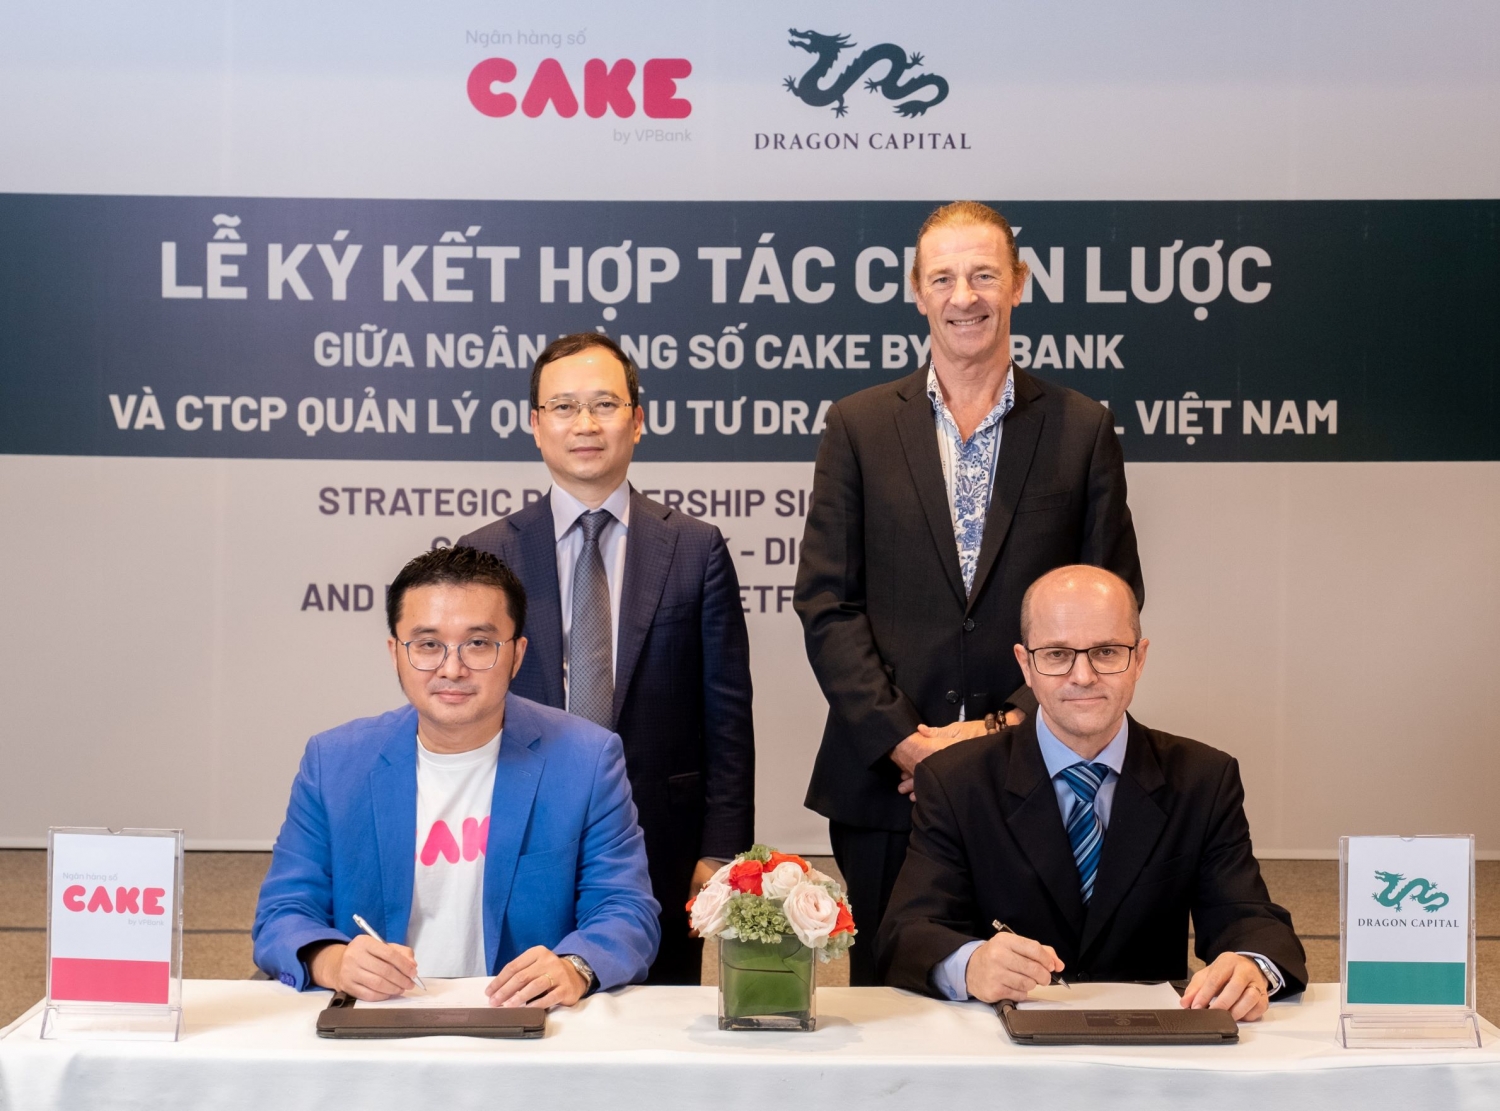 Cake by VPbank và Dragon Capital ký kết hợp tác chiến lược: Đầu tư dễ dàng, an toàn cùng CAKE chỉ từ 10.000VNĐ